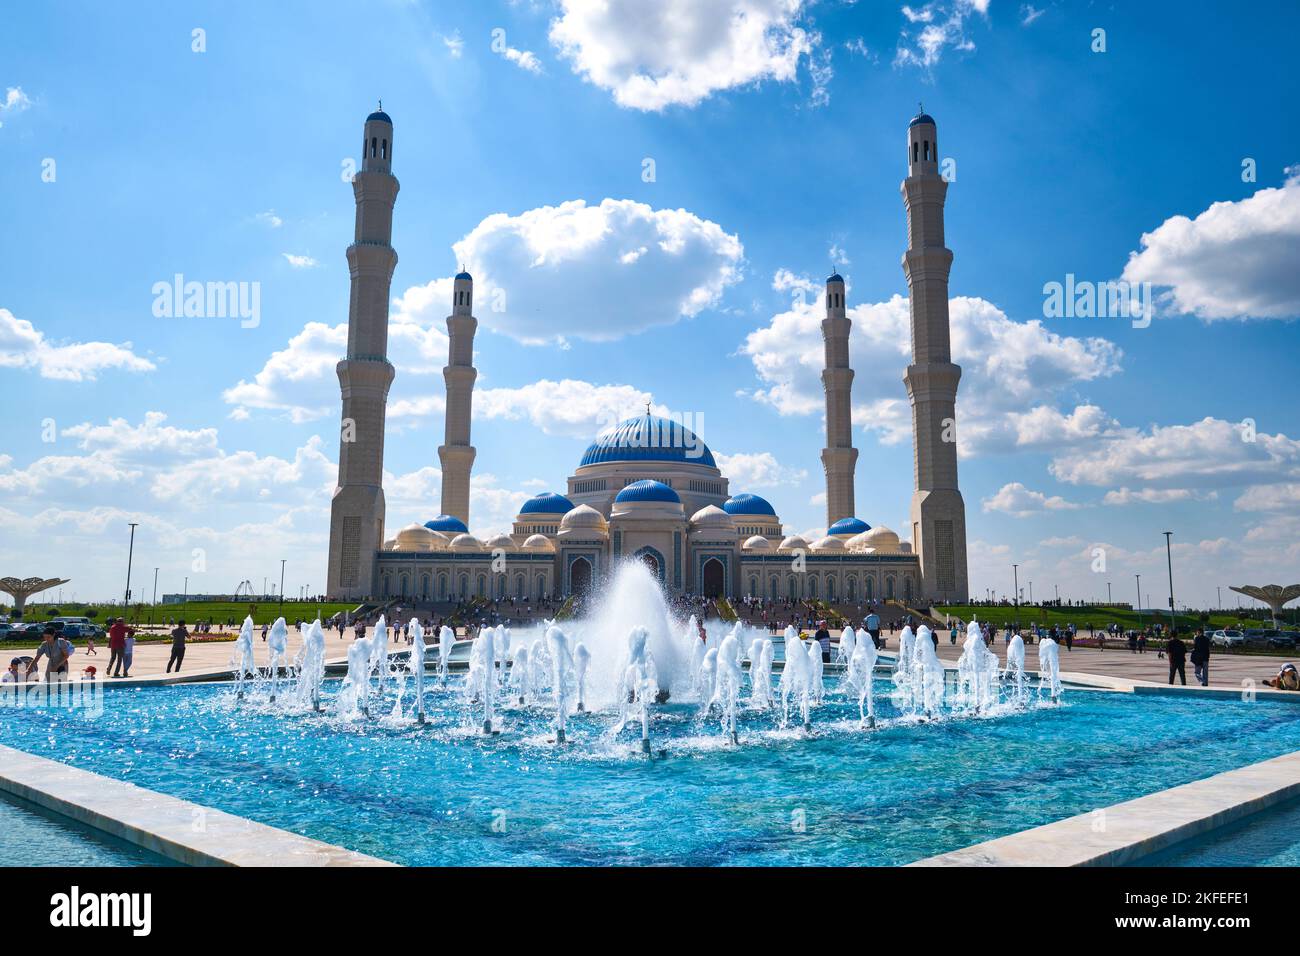 Una vista dell'entrata frontale dell'enorme moschea, con una serie di fontane d'acqua blu nella piazza. Alla nuova apertura nel 2022, la Grande Moschea di asta Foto Stock